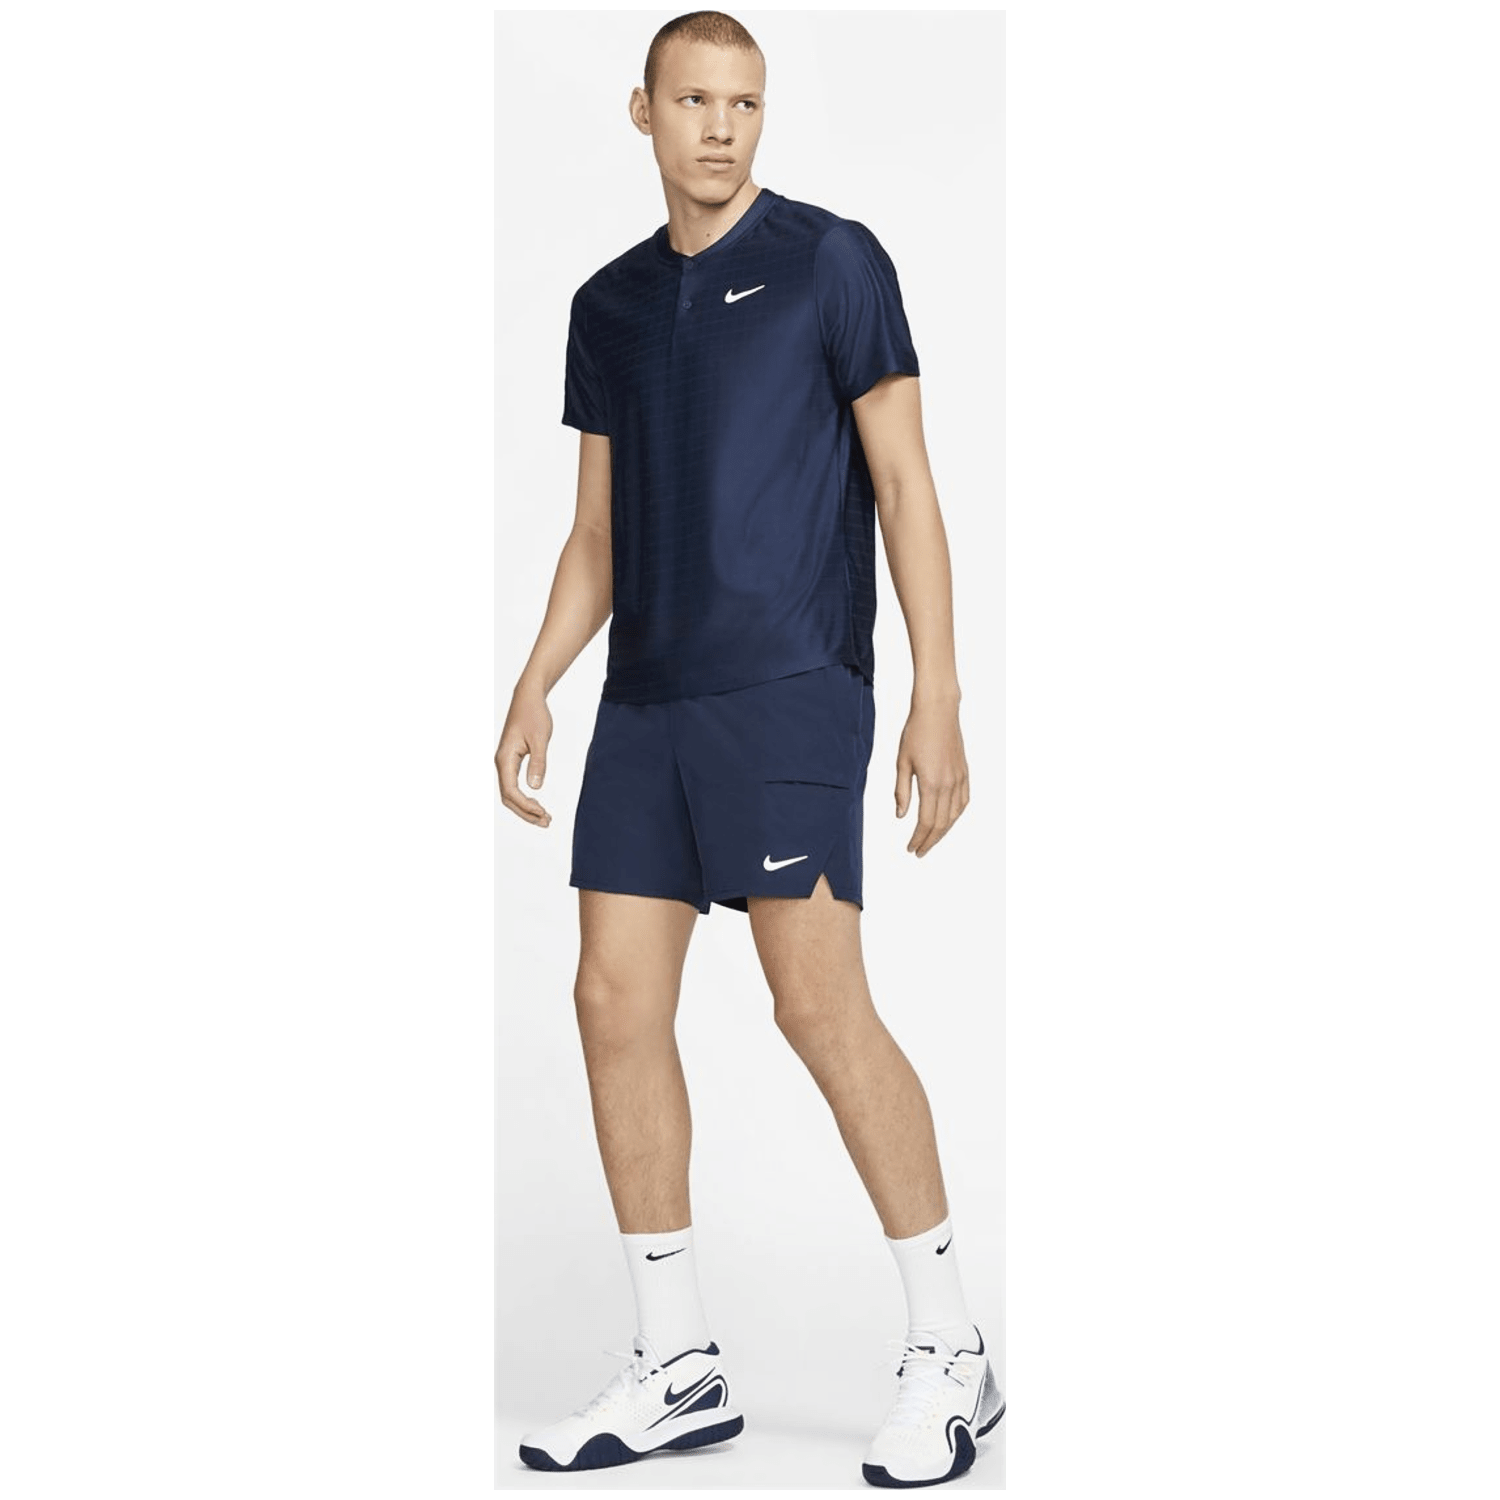 Nike NikeCourt Dri-FIT Advantage Polo Herren Poloshirt